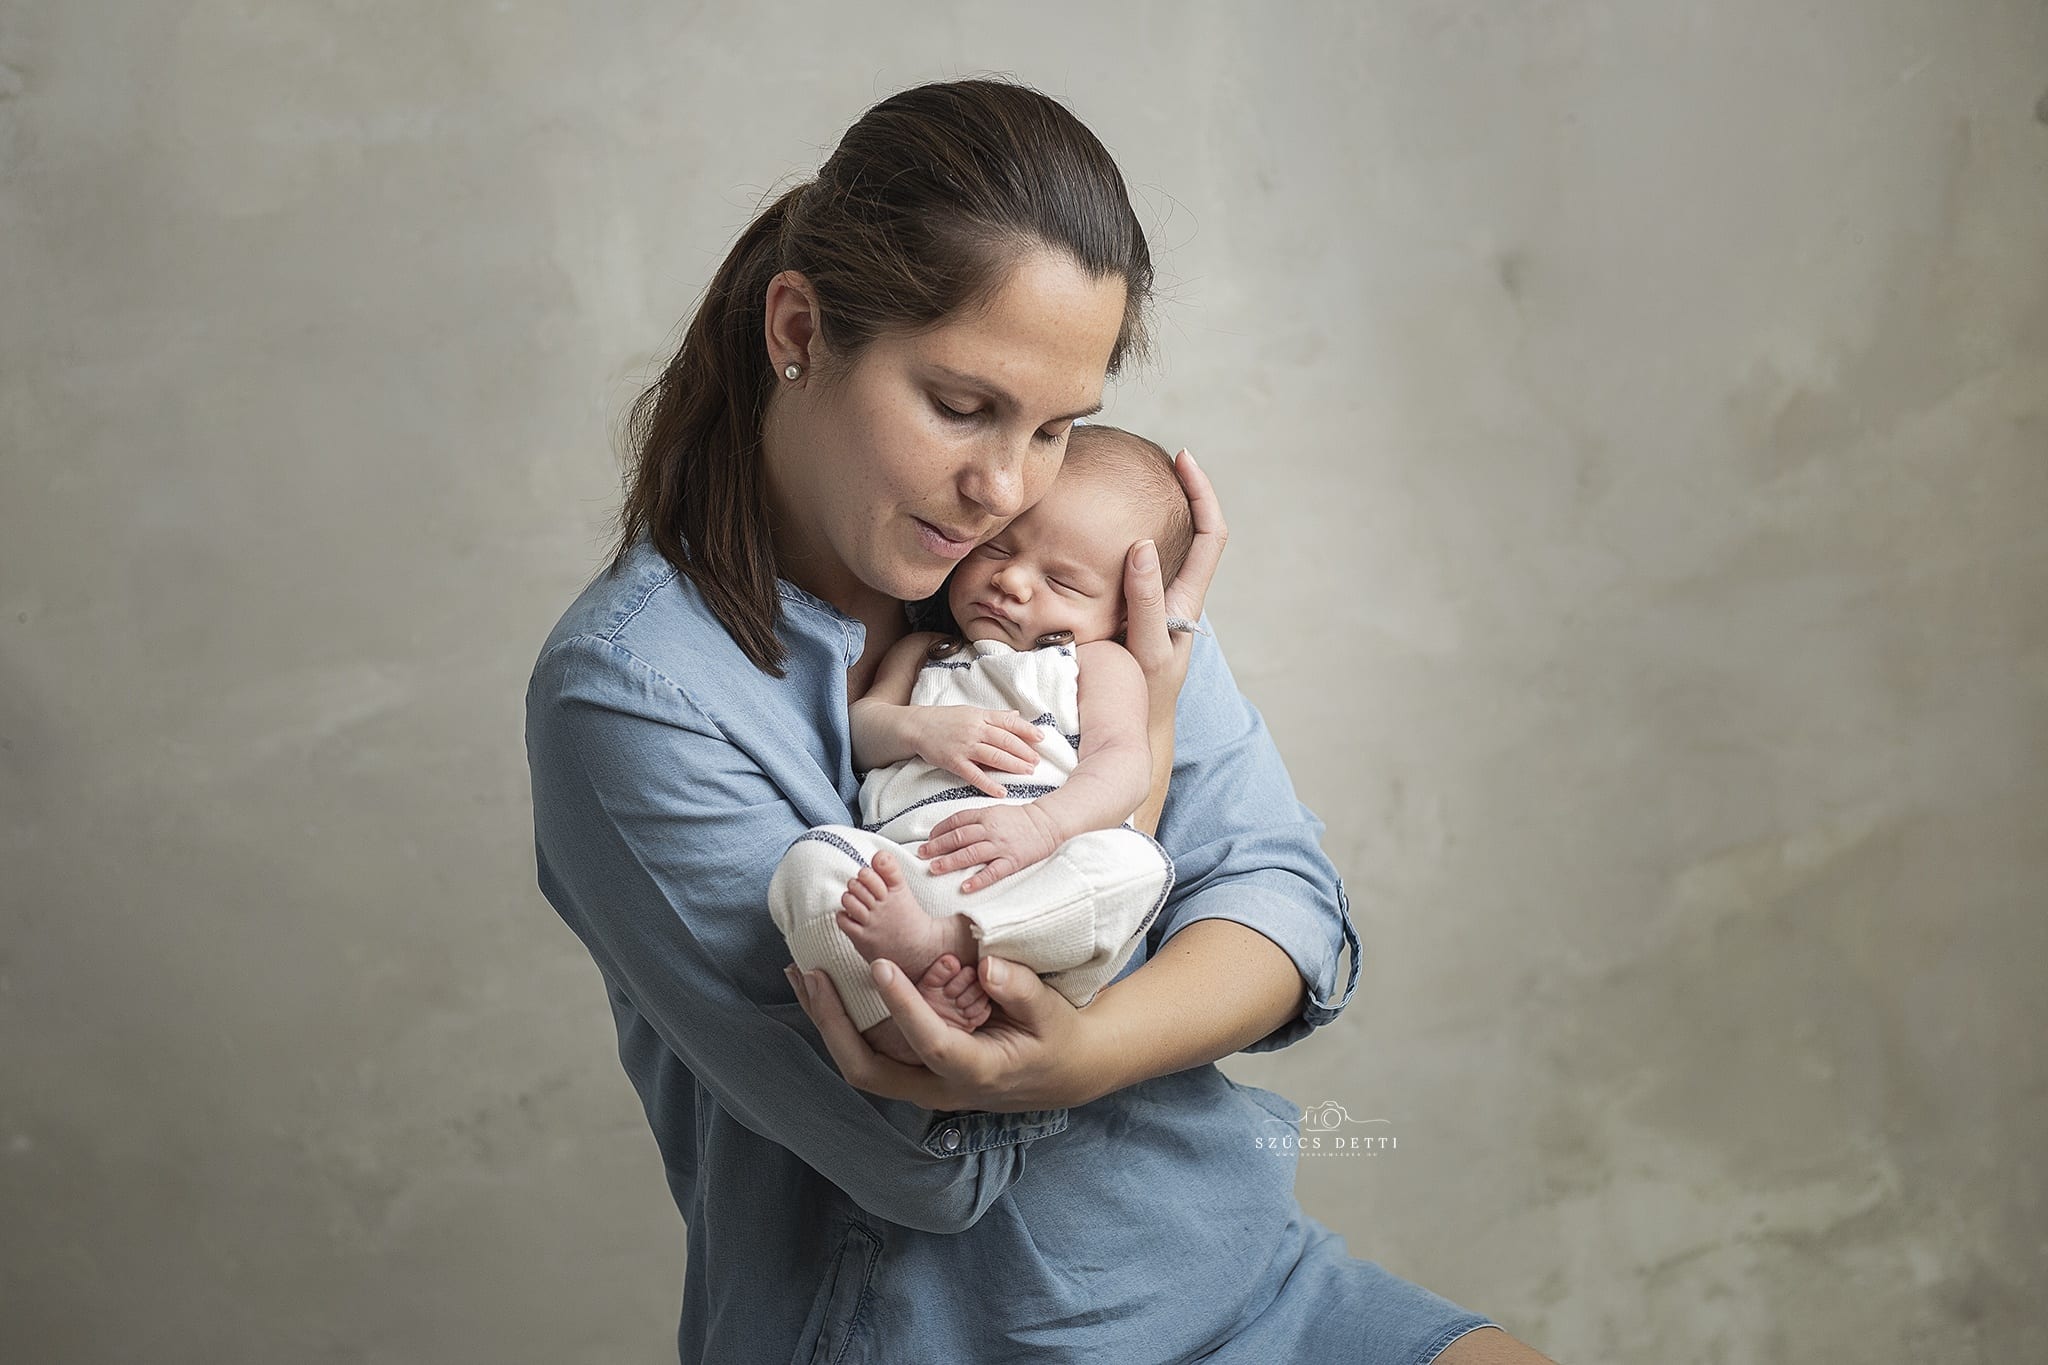 Budapesti újszülöttfotózás fotóstúdióban